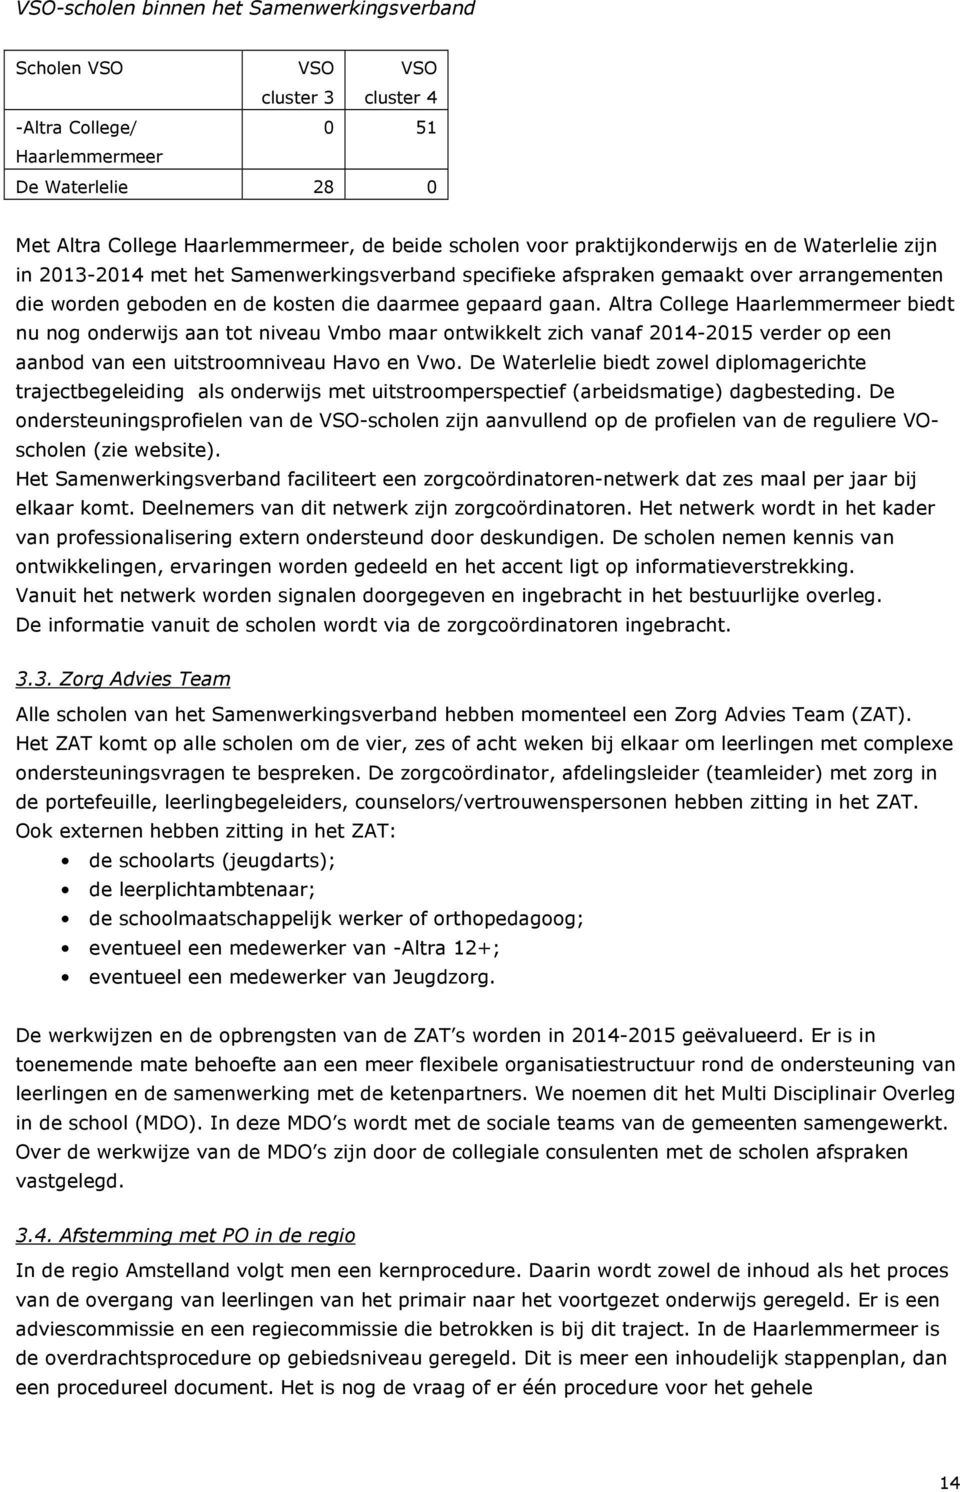 Altra College Haarlemmermeer biedt nu nog onderwijs aan tot niveau Vmbo maar ontwikkelt zich vanaf 2014-2015 verder op een aanbod van een uitstroomniveau Havo en Vwo.